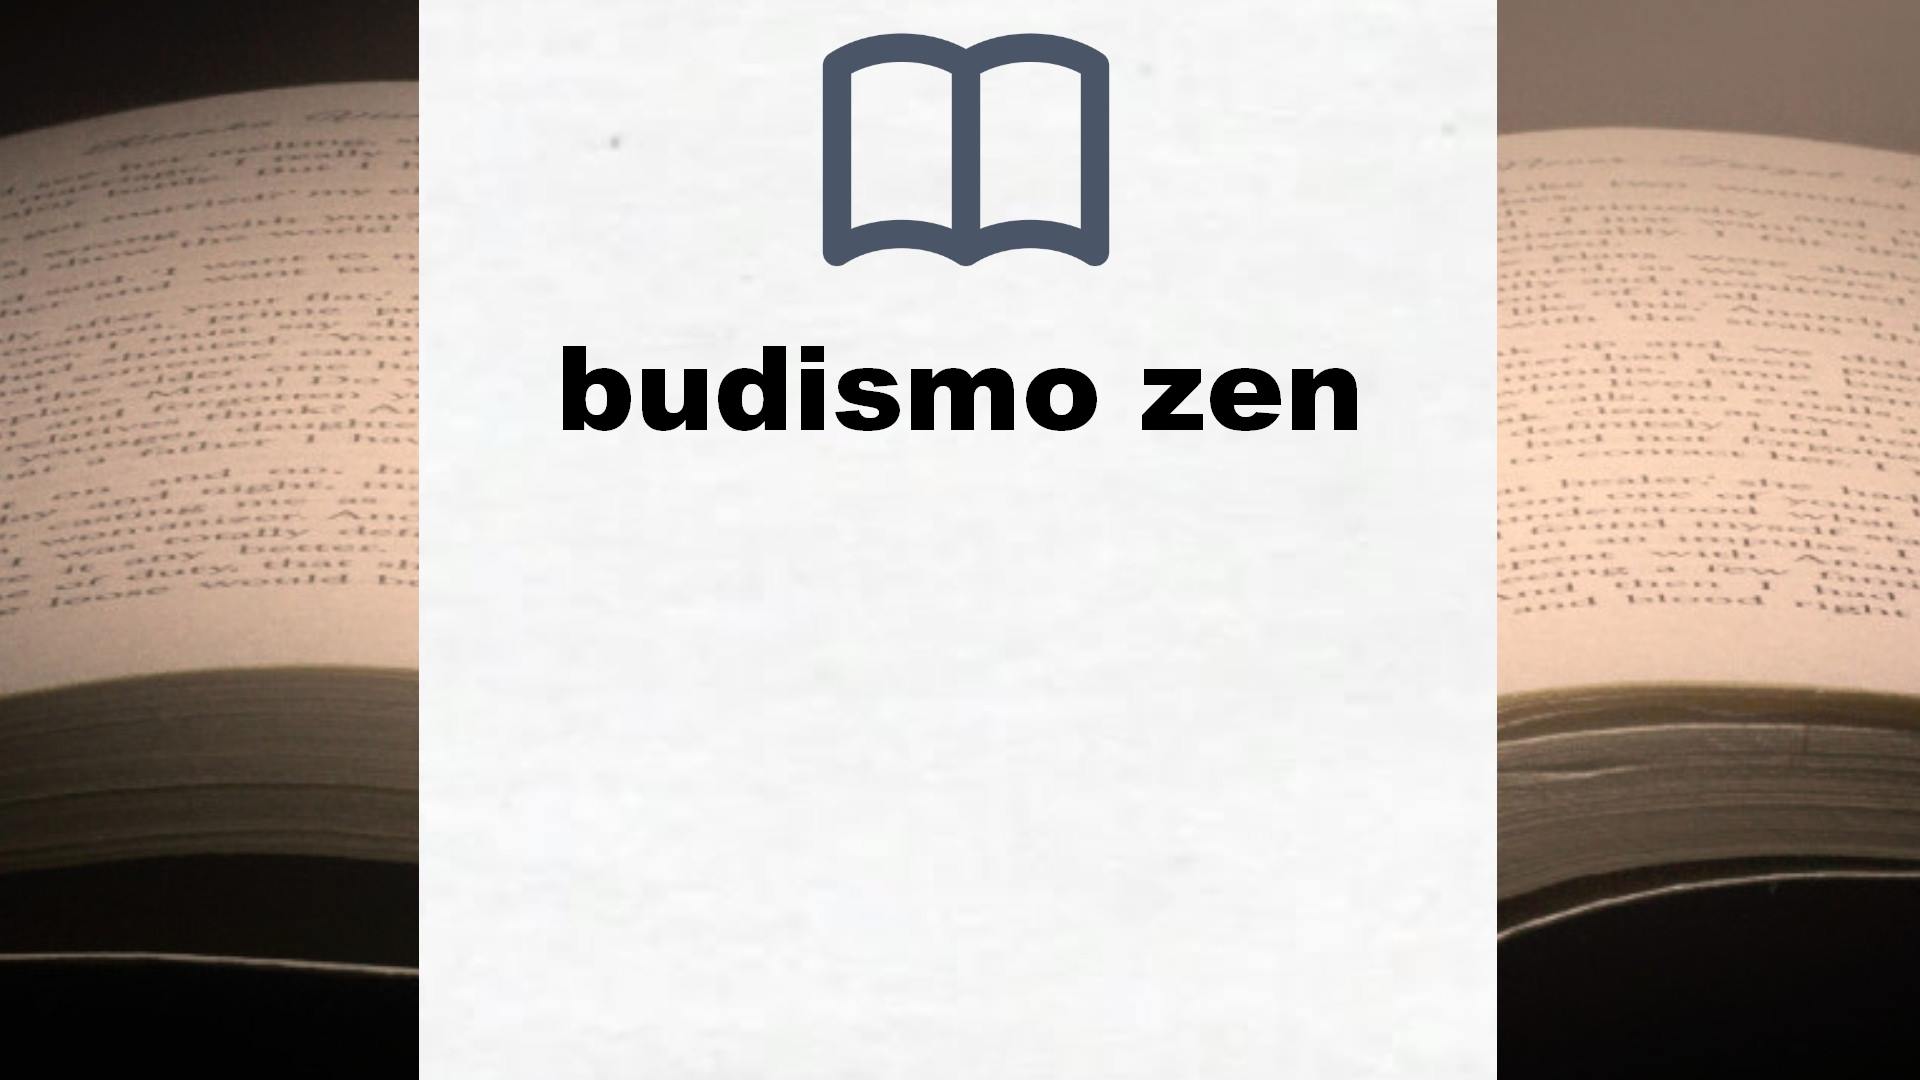 Libros sobre budismo zen